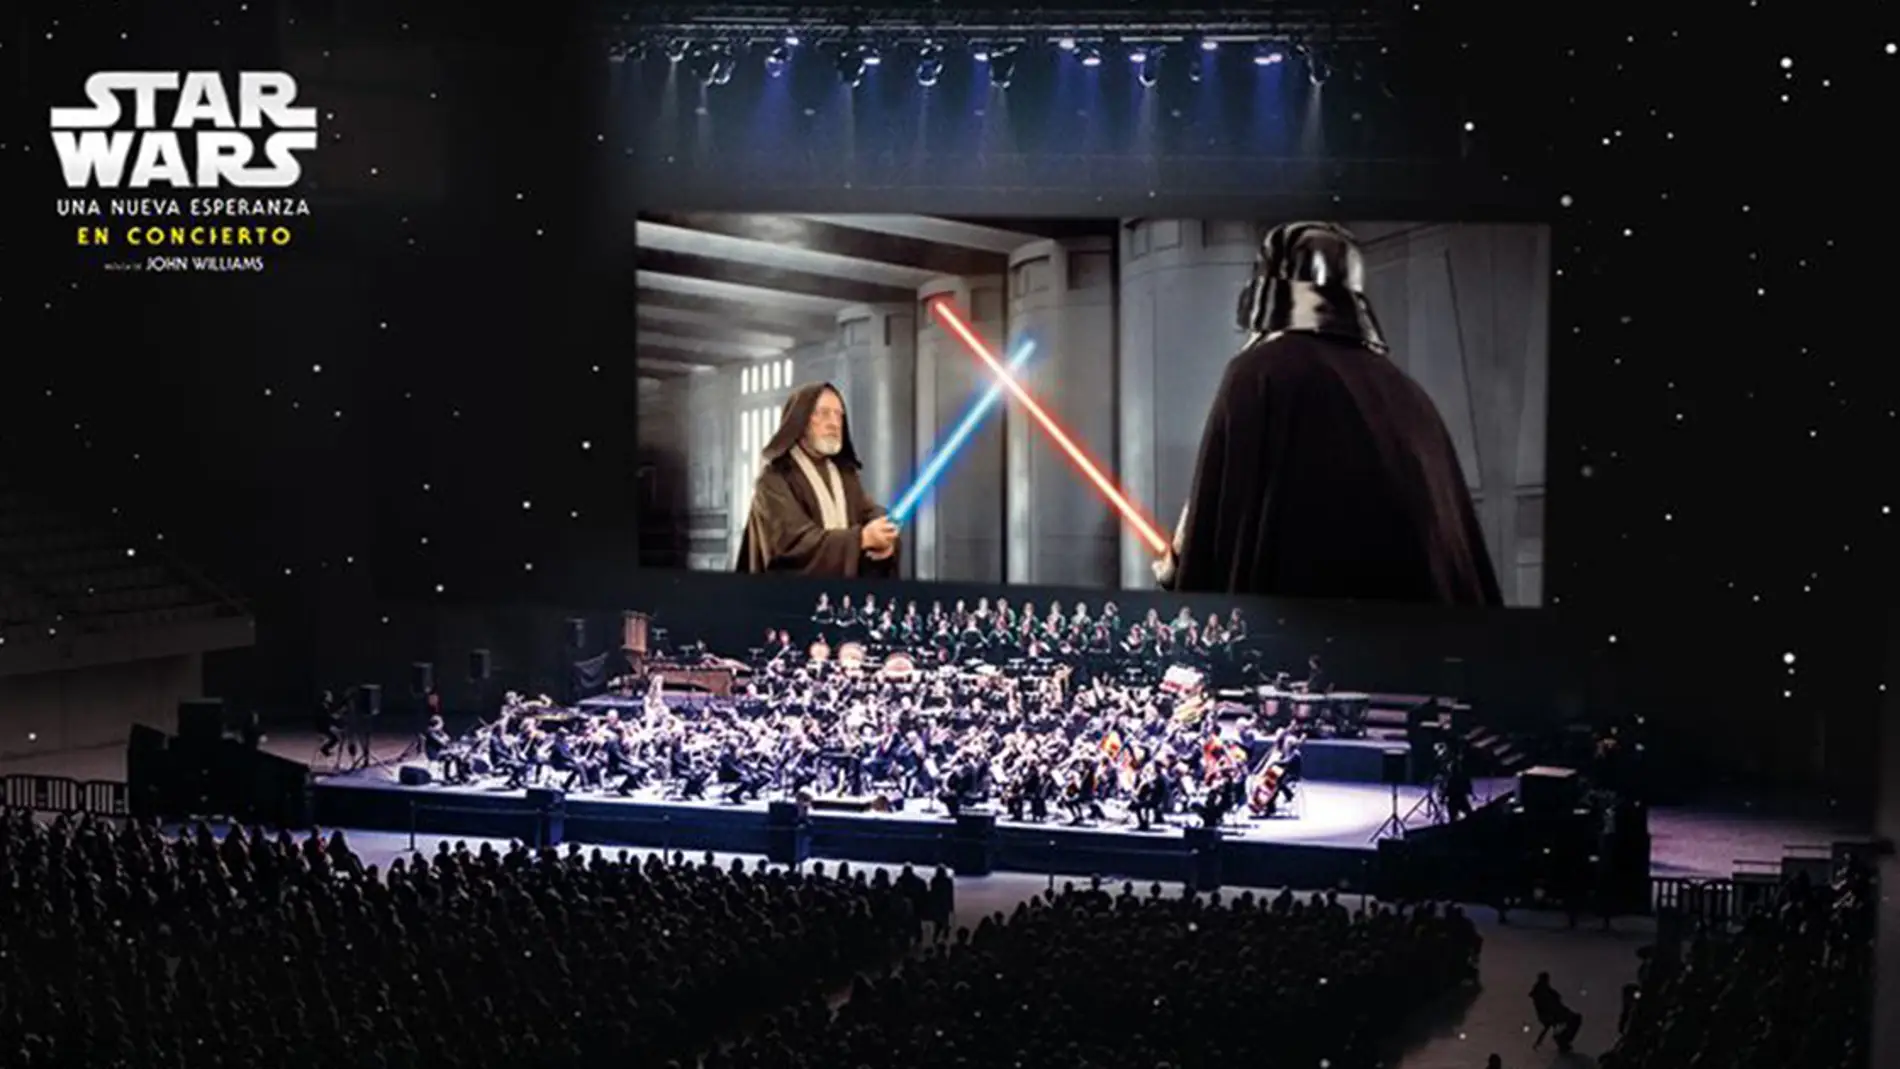 Concurso 'Star Wars: Una nueva esperanza' en concierto